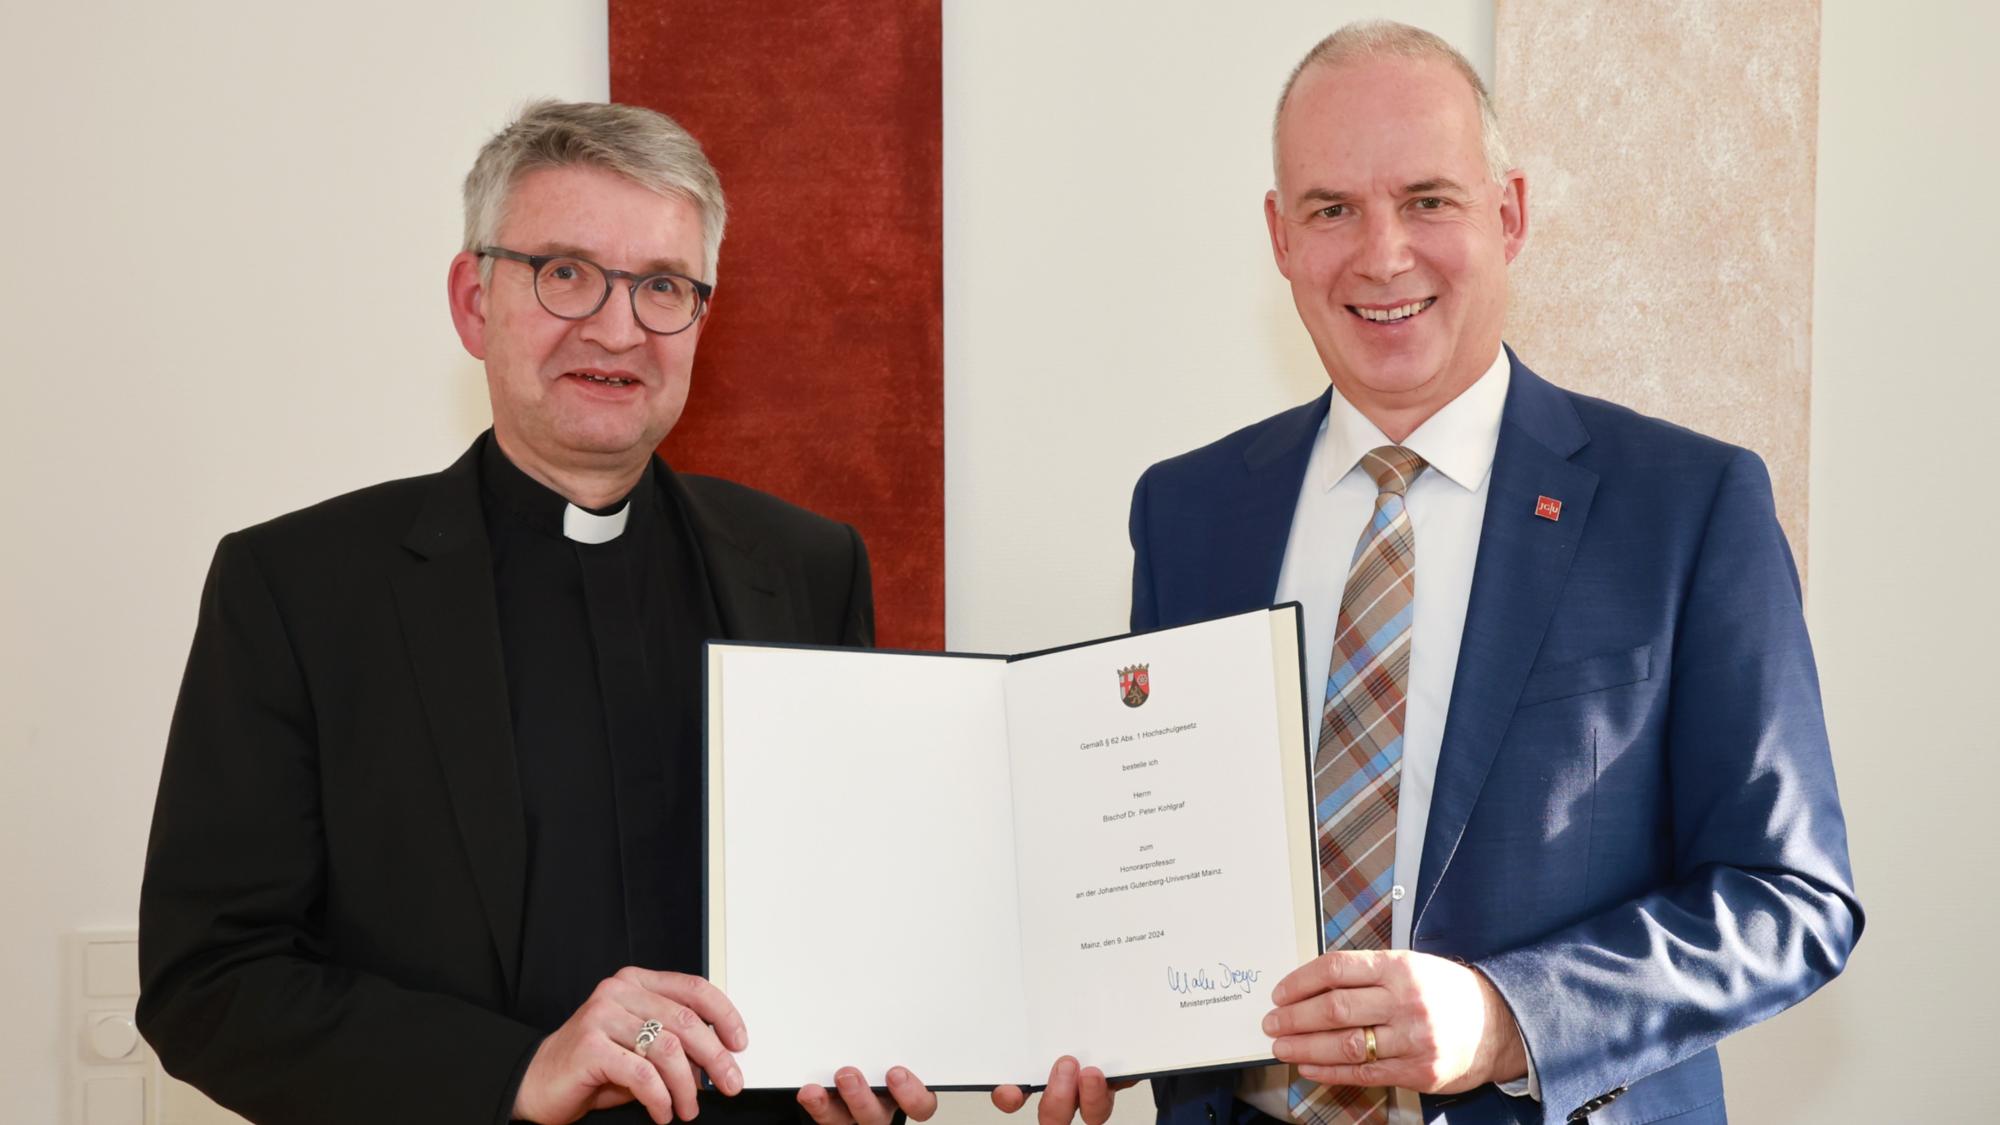 Bischof Peter Kohlgraf erhält die Ernennungsurkunde zum Honorarprofessor der Johannes Gutenberg-Universität Mainz vom Präsidenten der Universität, Georg Krausch